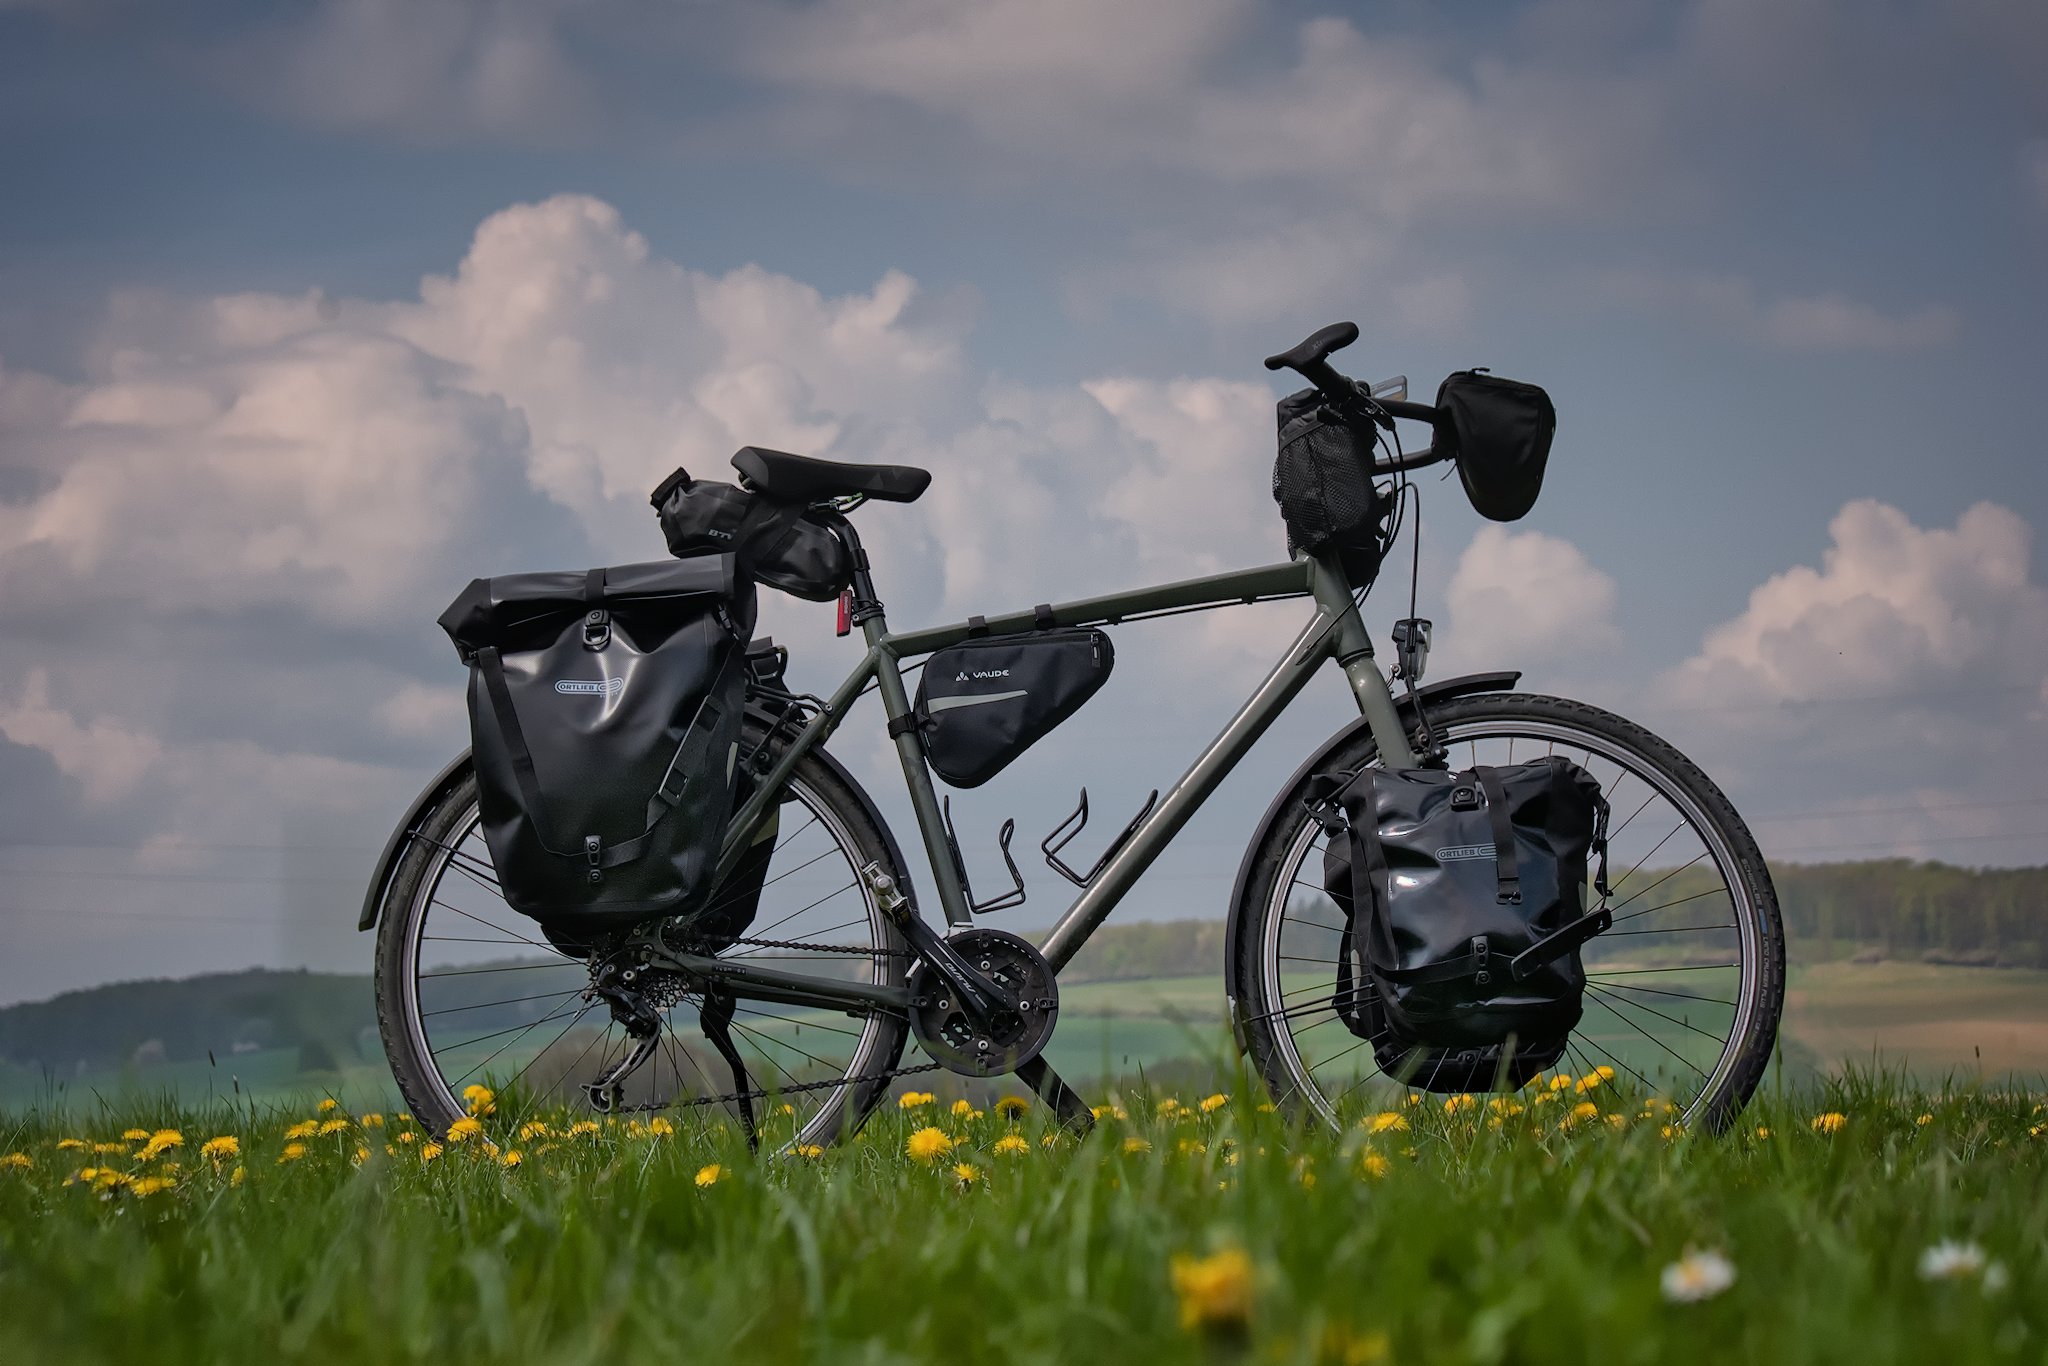 Featured image for “Budget Reiserad – Ein gutes Fahrrad muss nicht teuer sein”